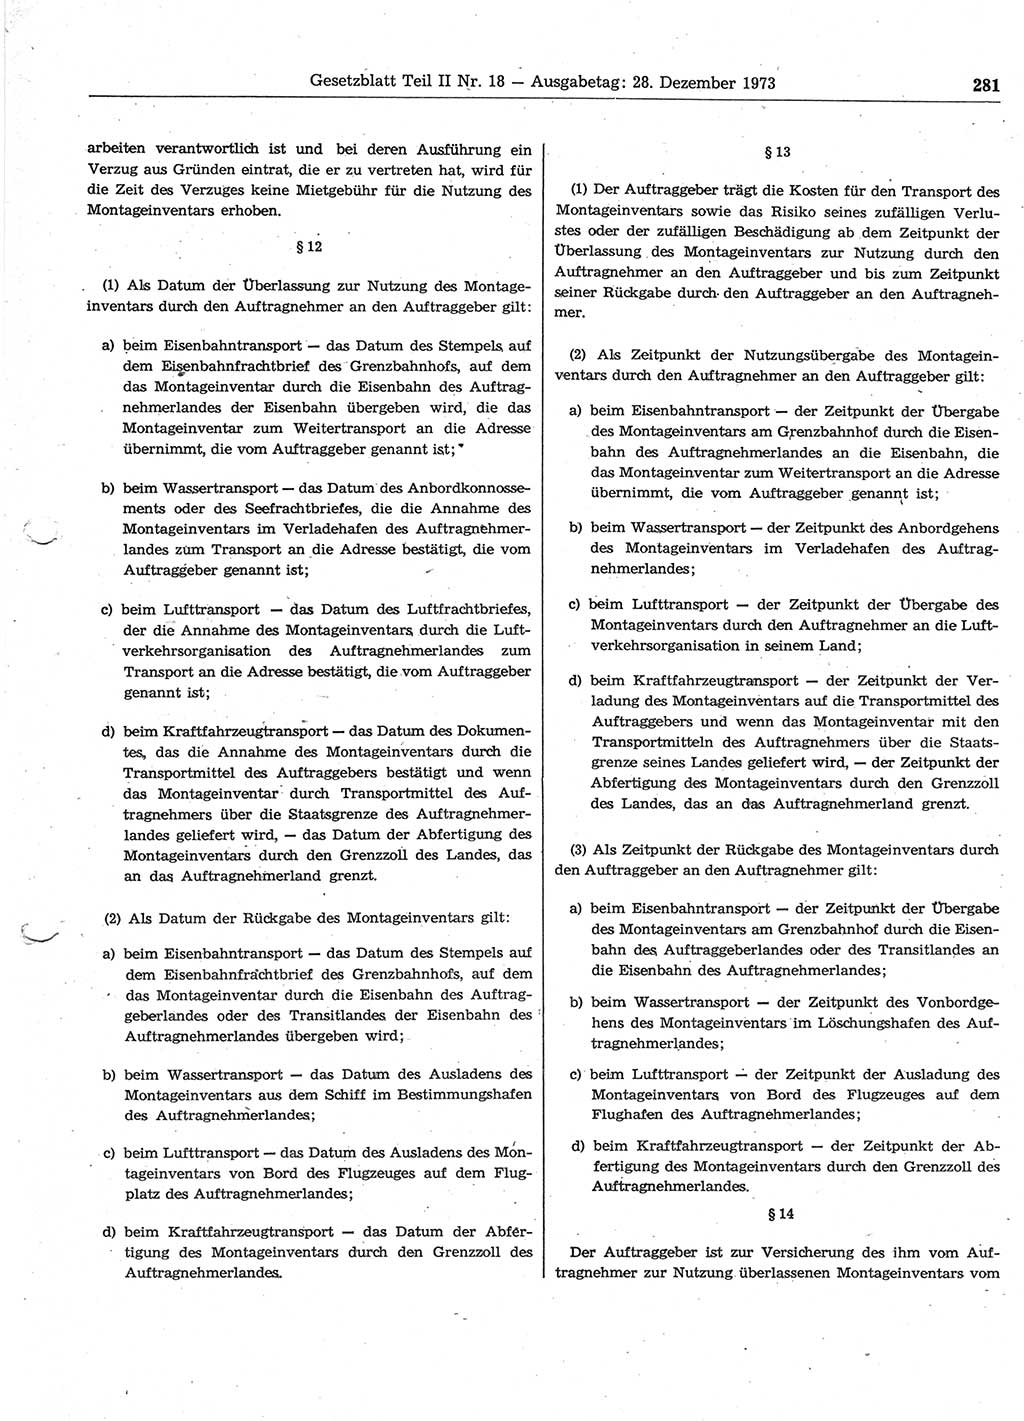 Gesetzblatt (GBl.) der Deutschen Demokratischen Republik (DDR) Teil ⅠⅠ 1973, Seite 281 (GBl. DDR ⅠⅠ 1973, S. 281)